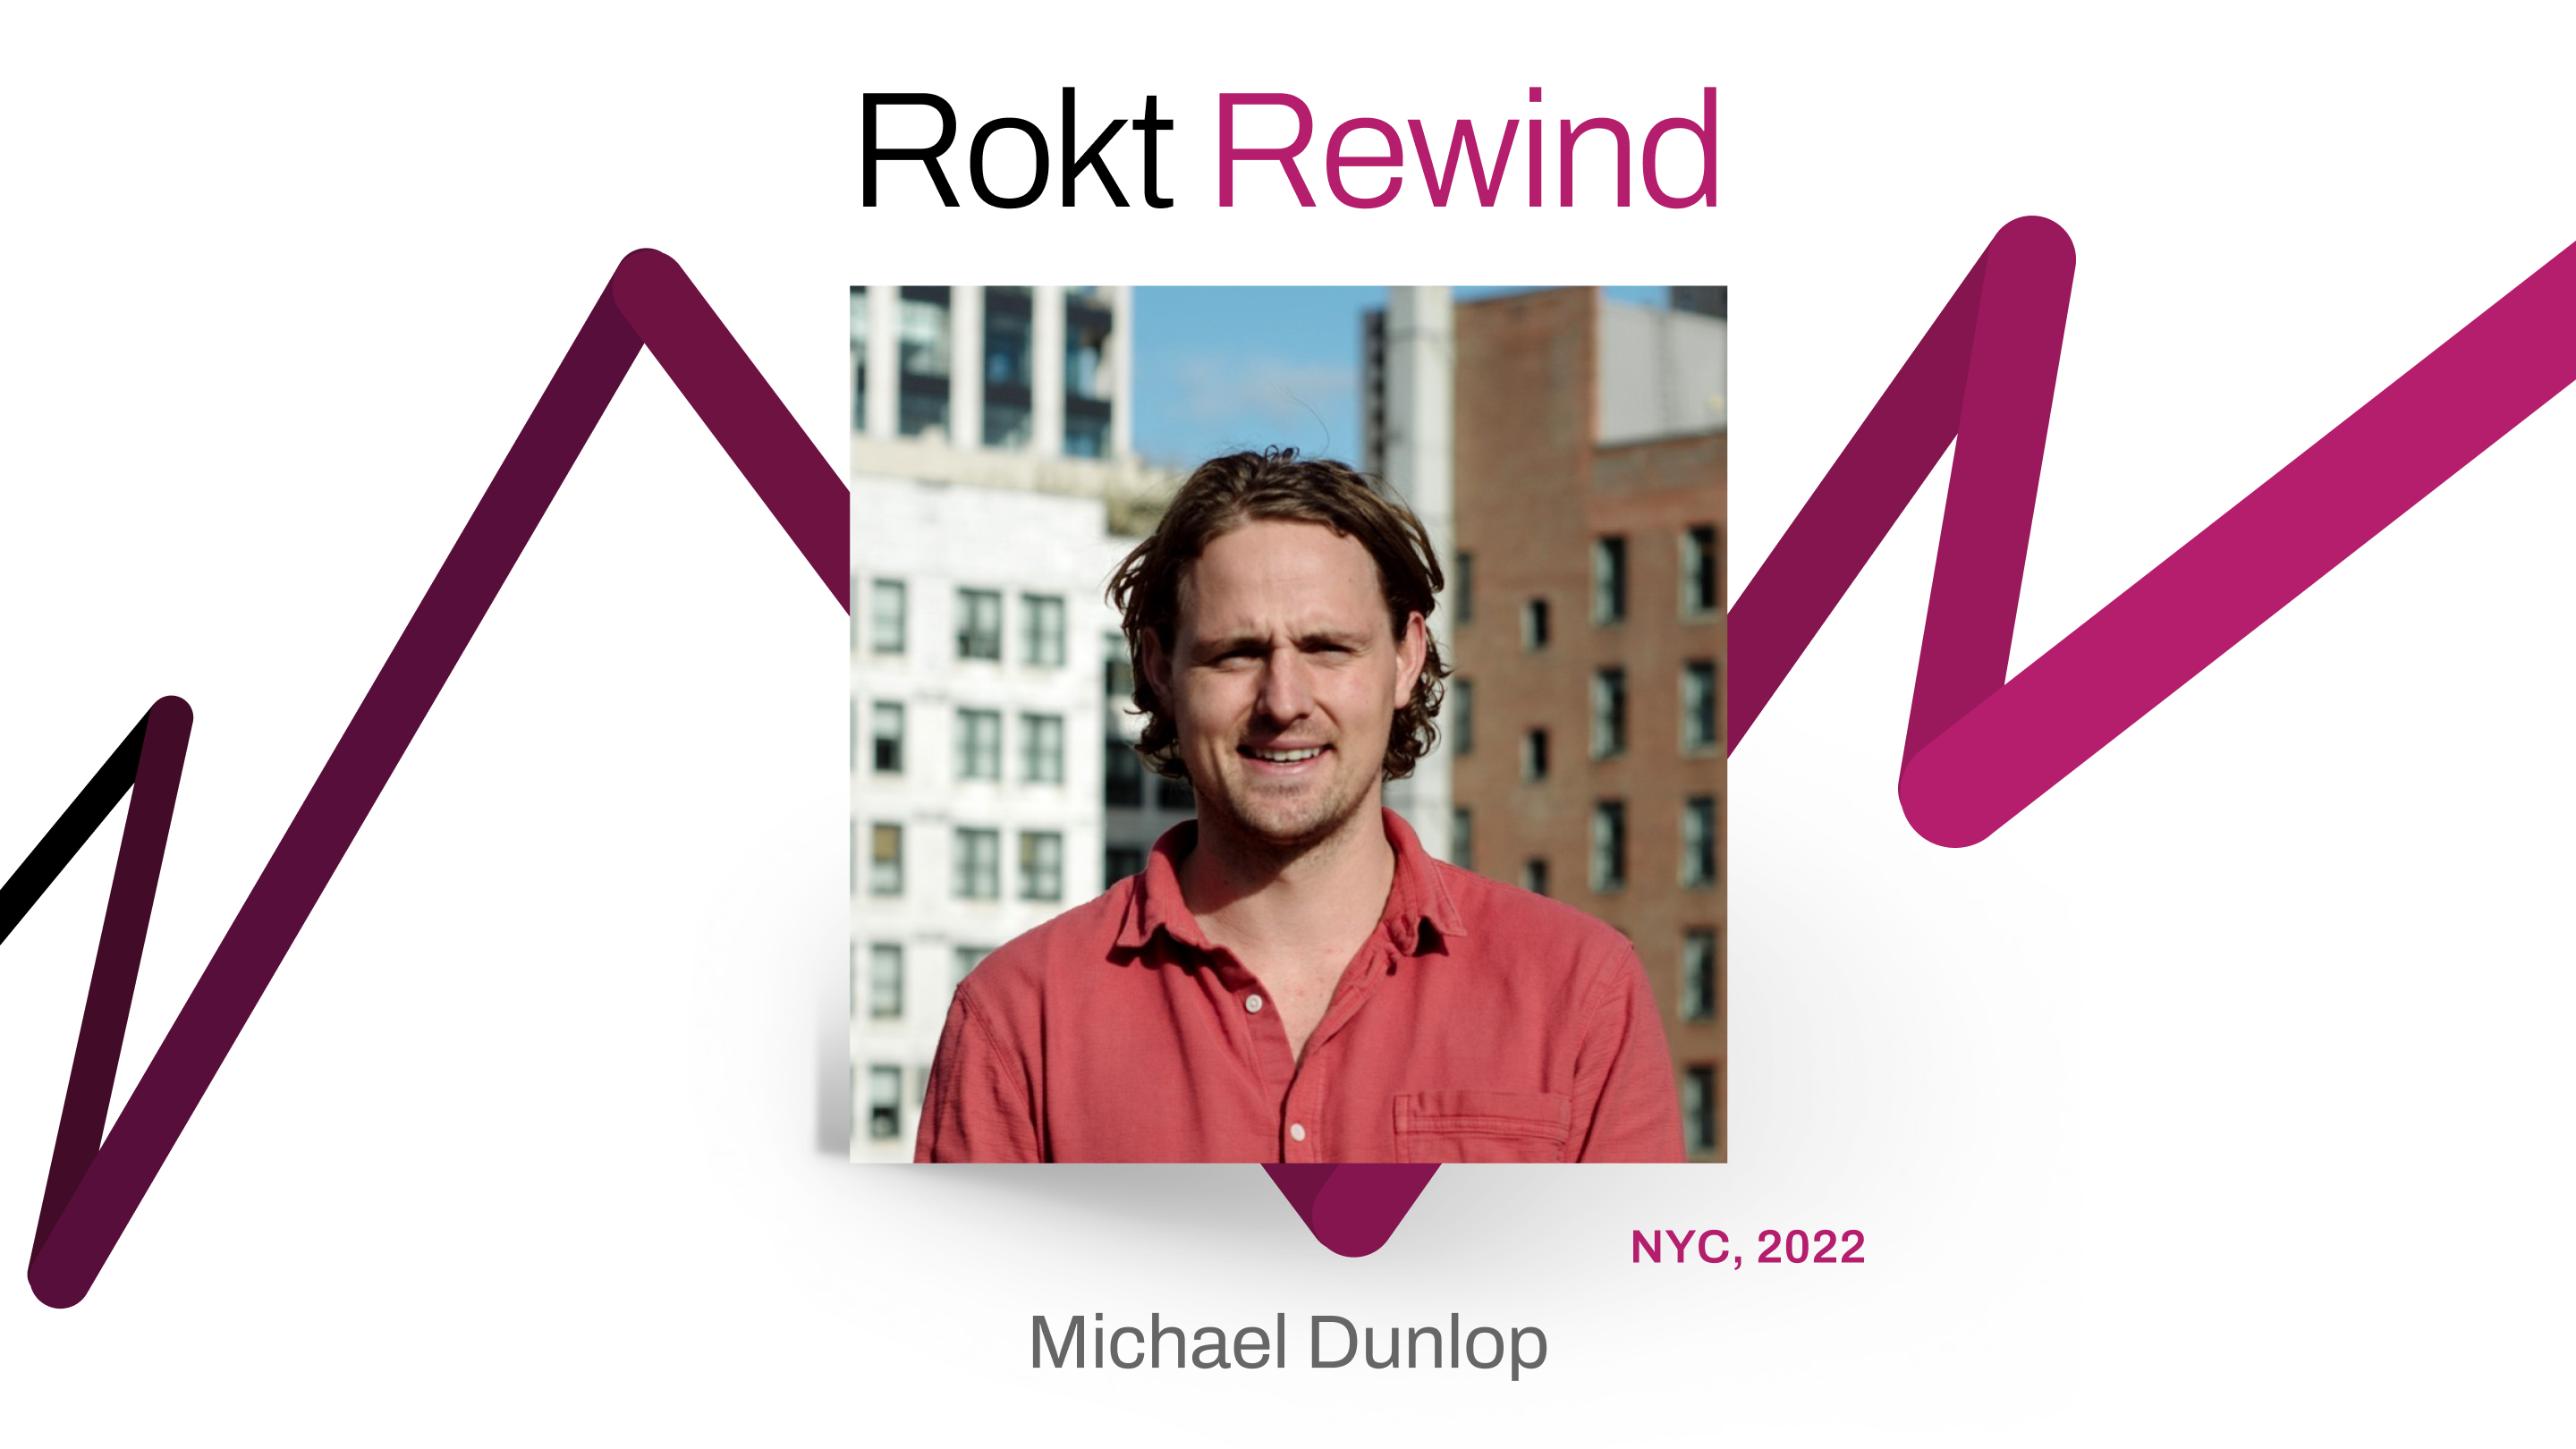 Rokt Rewind with Michael Dunlop